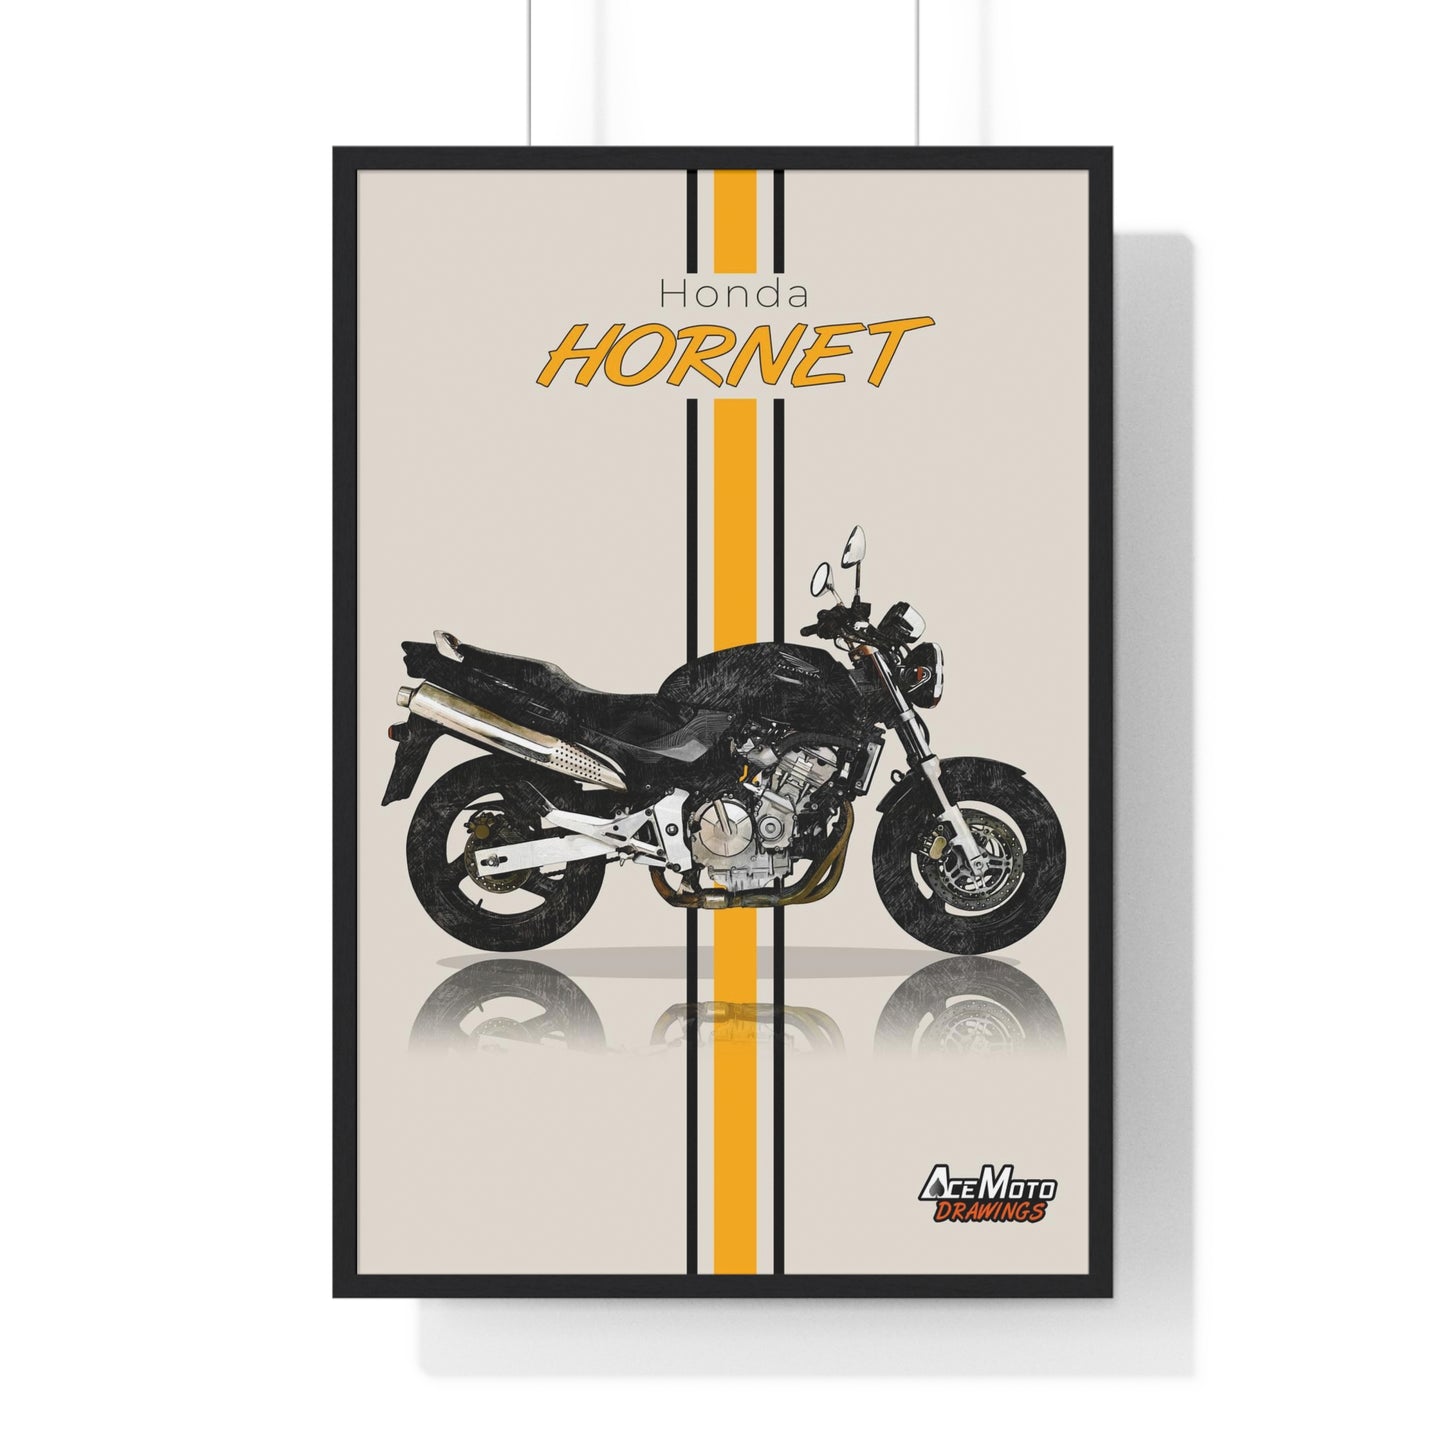 Honda Hornet CB600F | Wall Art - Frame Poster - 1998